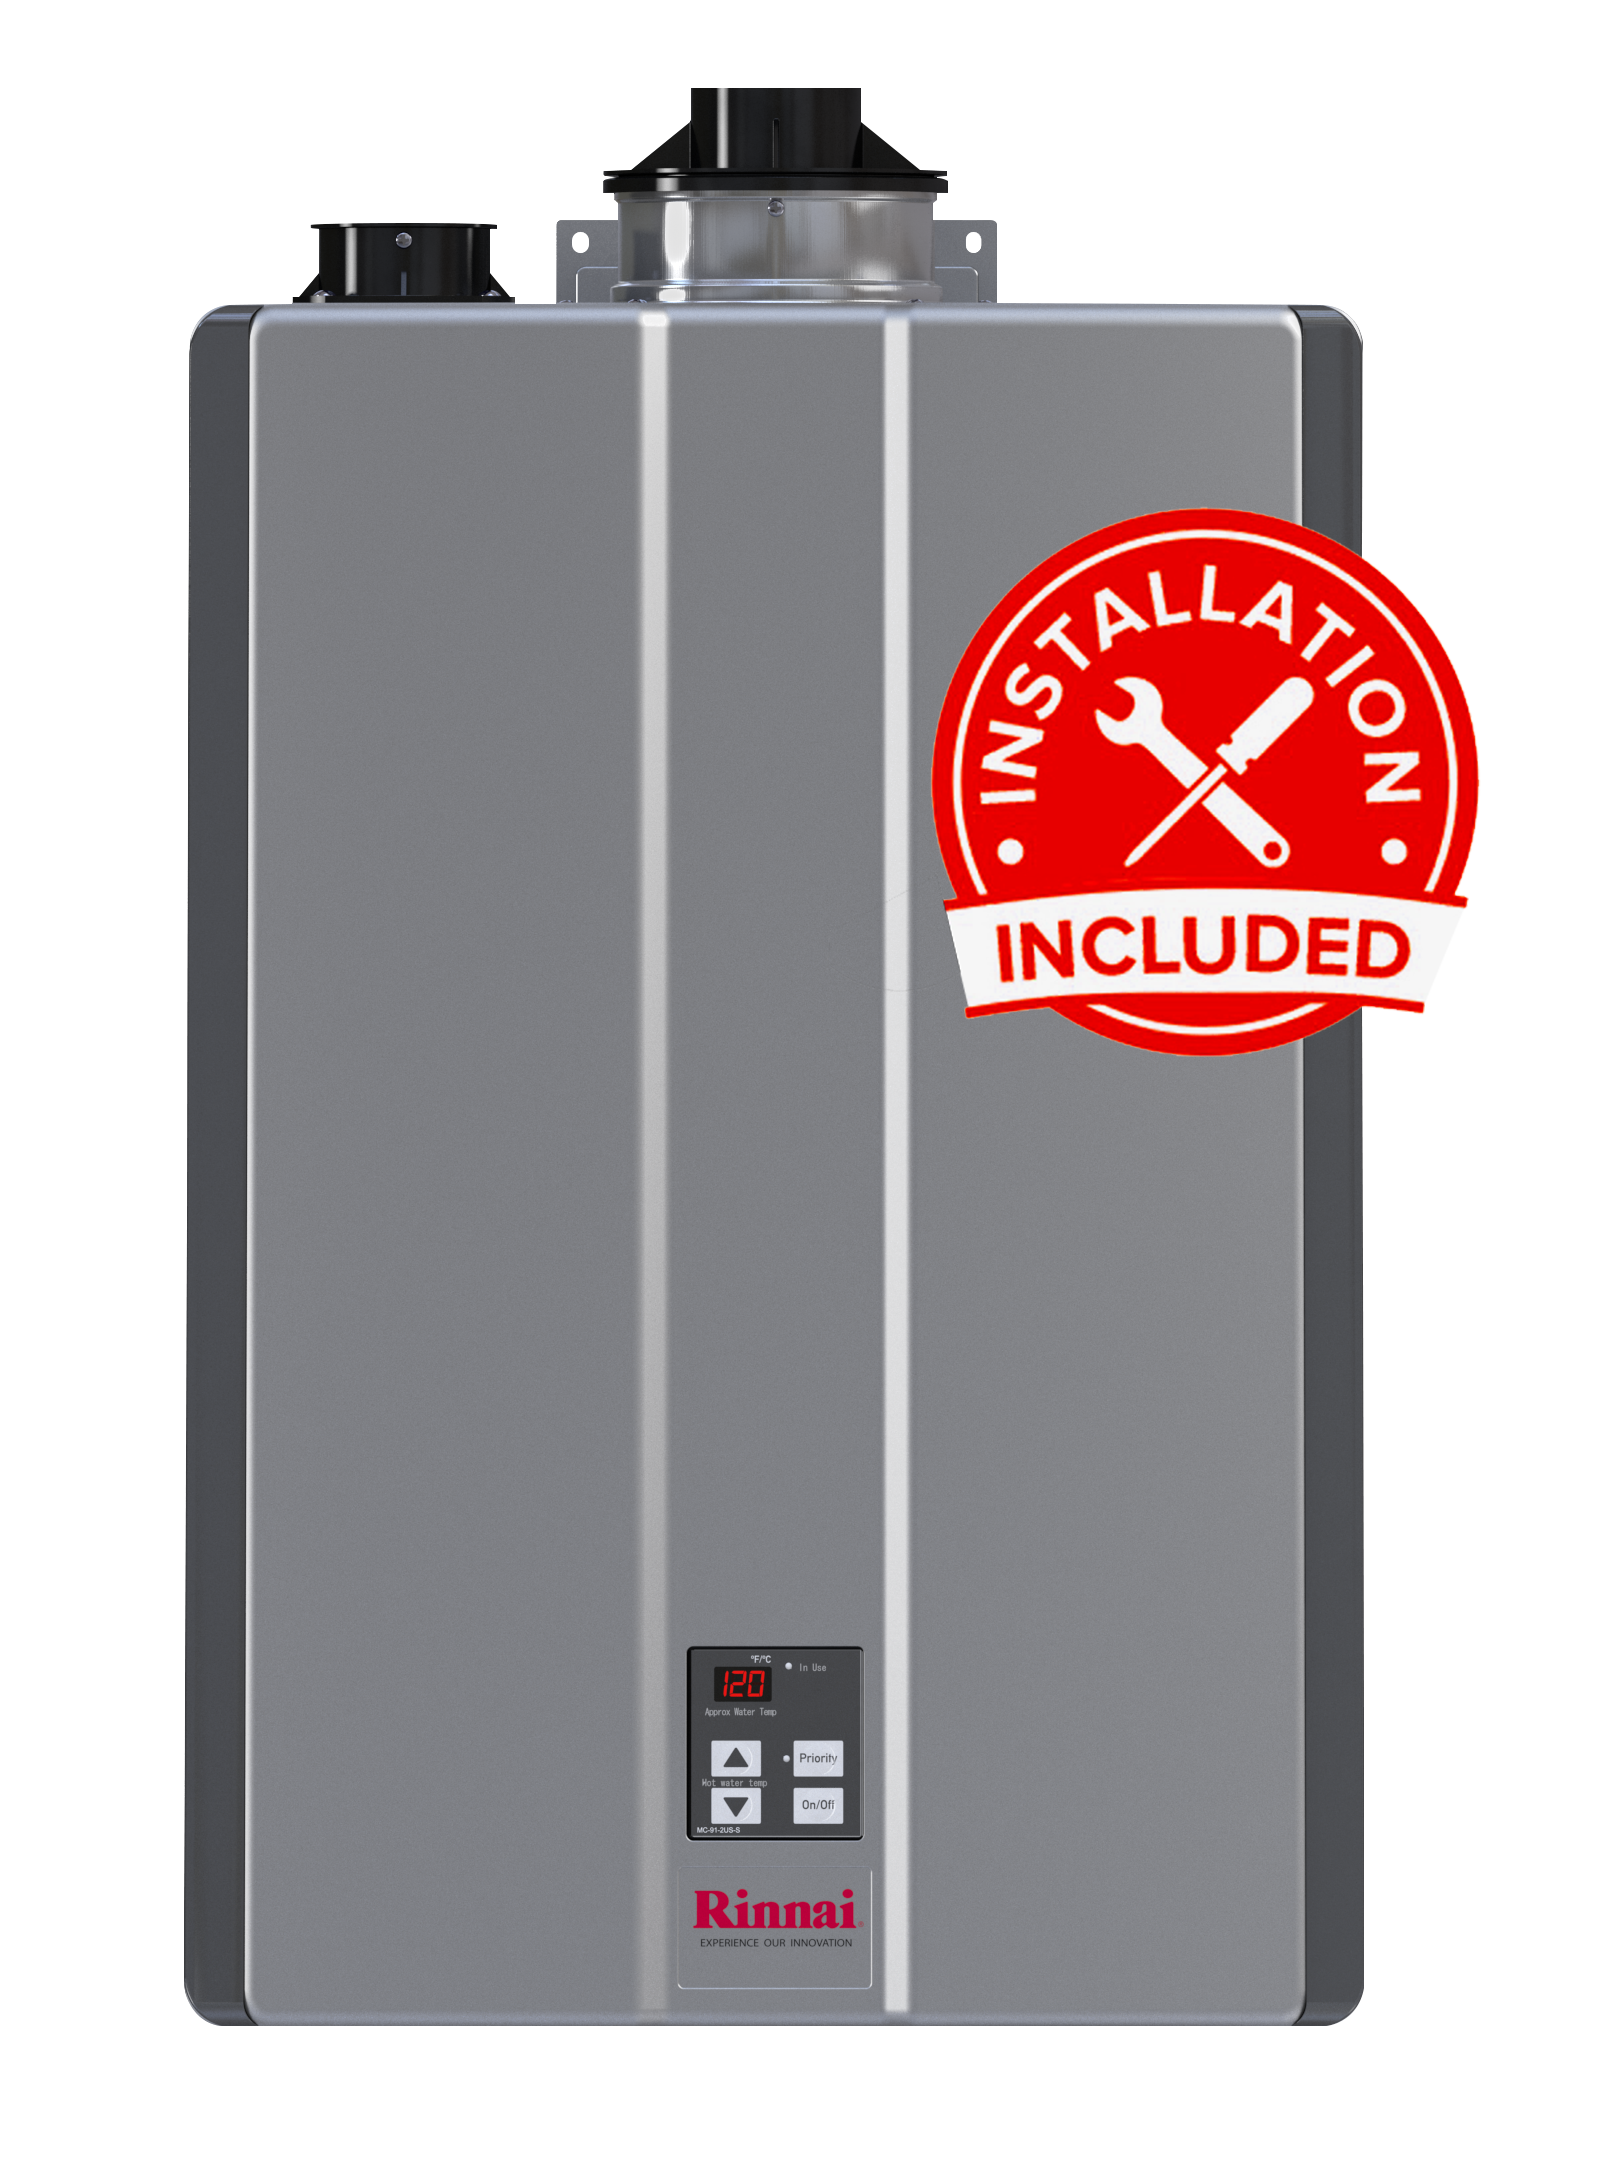 Rinnai RU160IN tankless water heater